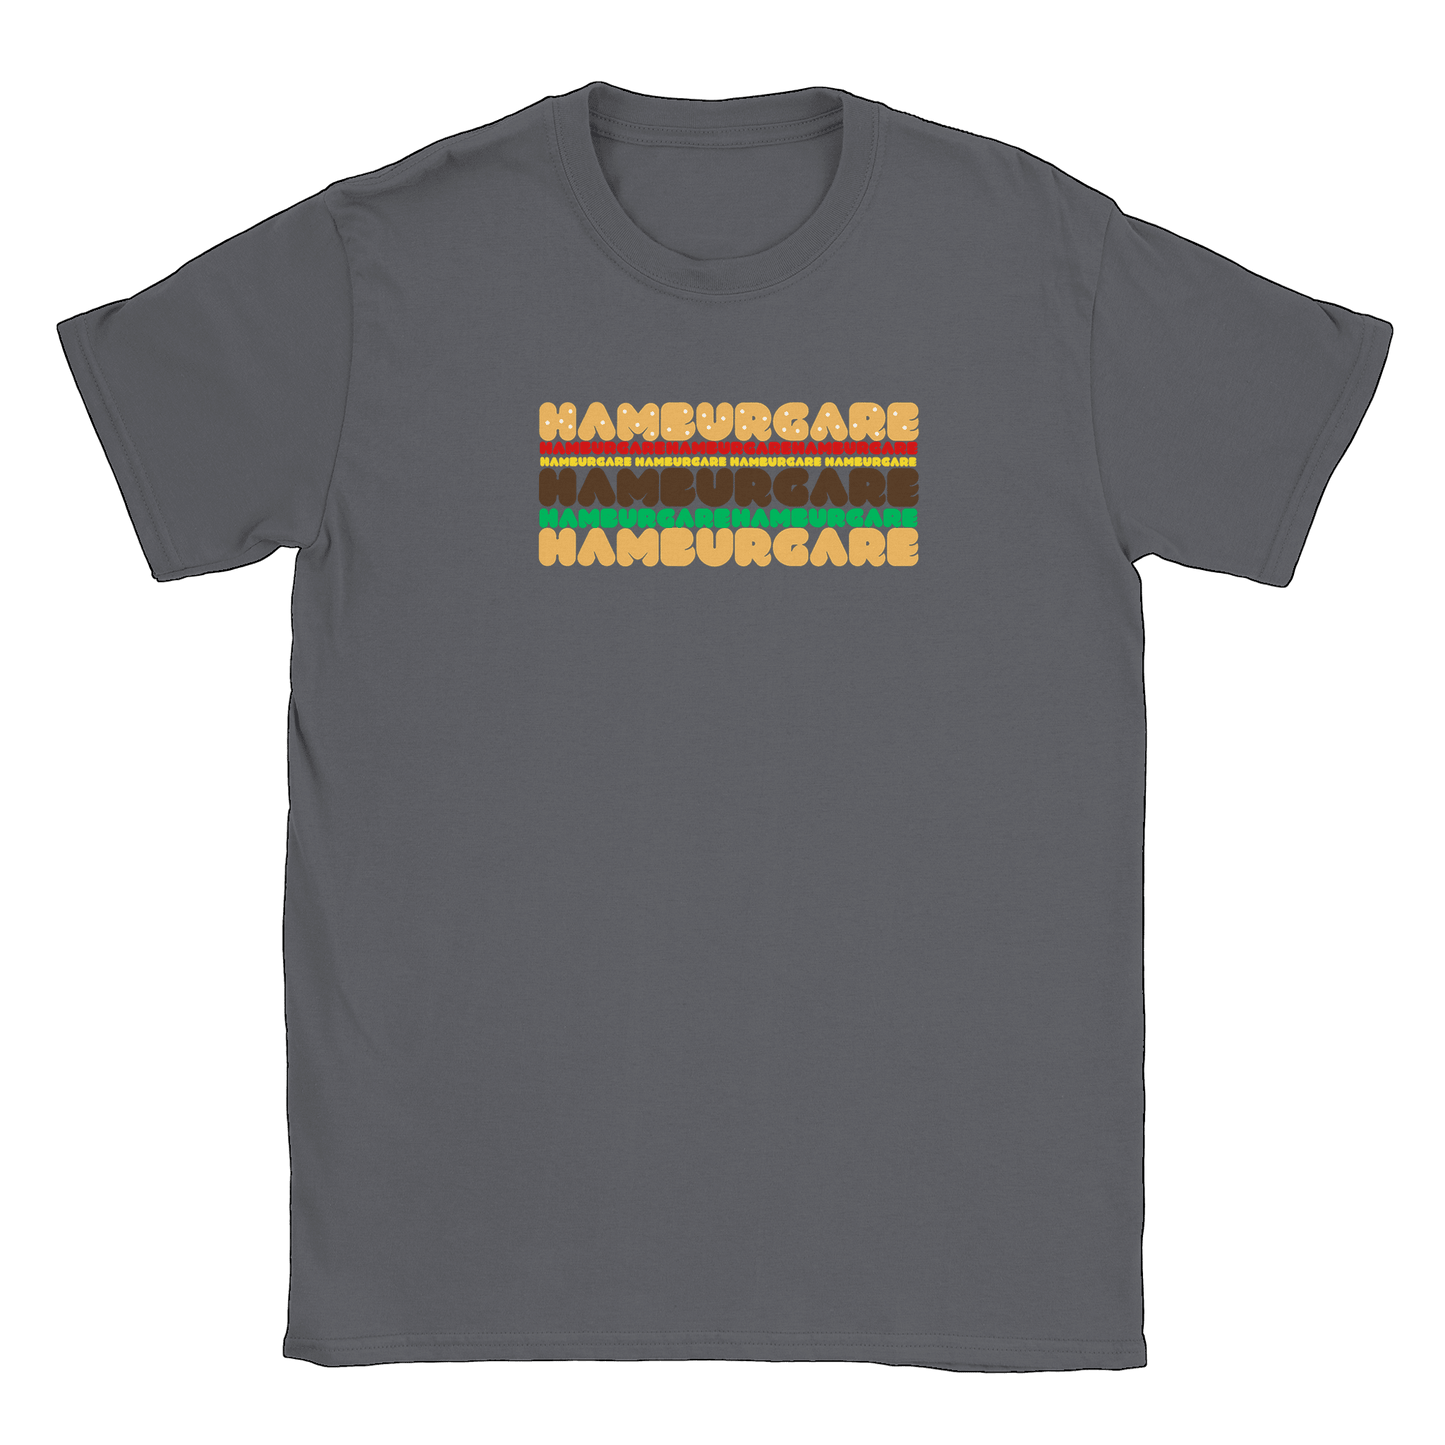 Hamburgare - T-shirt Charcoal